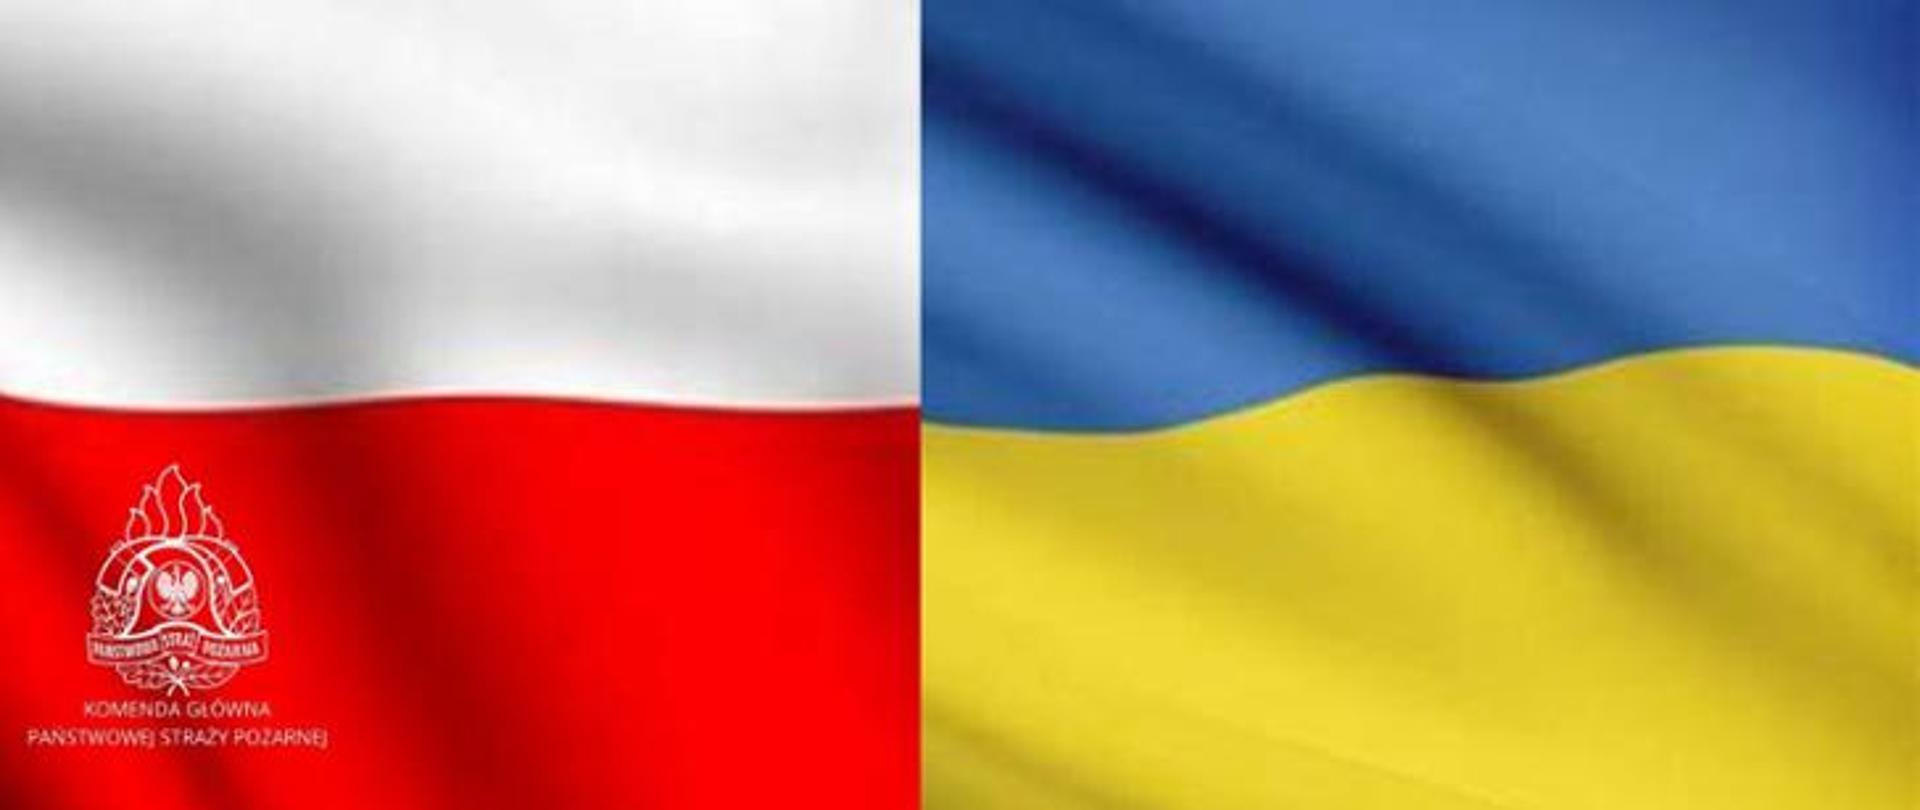 dwie flagi obok siebie biało czerwona Polski i niebiesko żółpta ukrainy, na dole logo psp